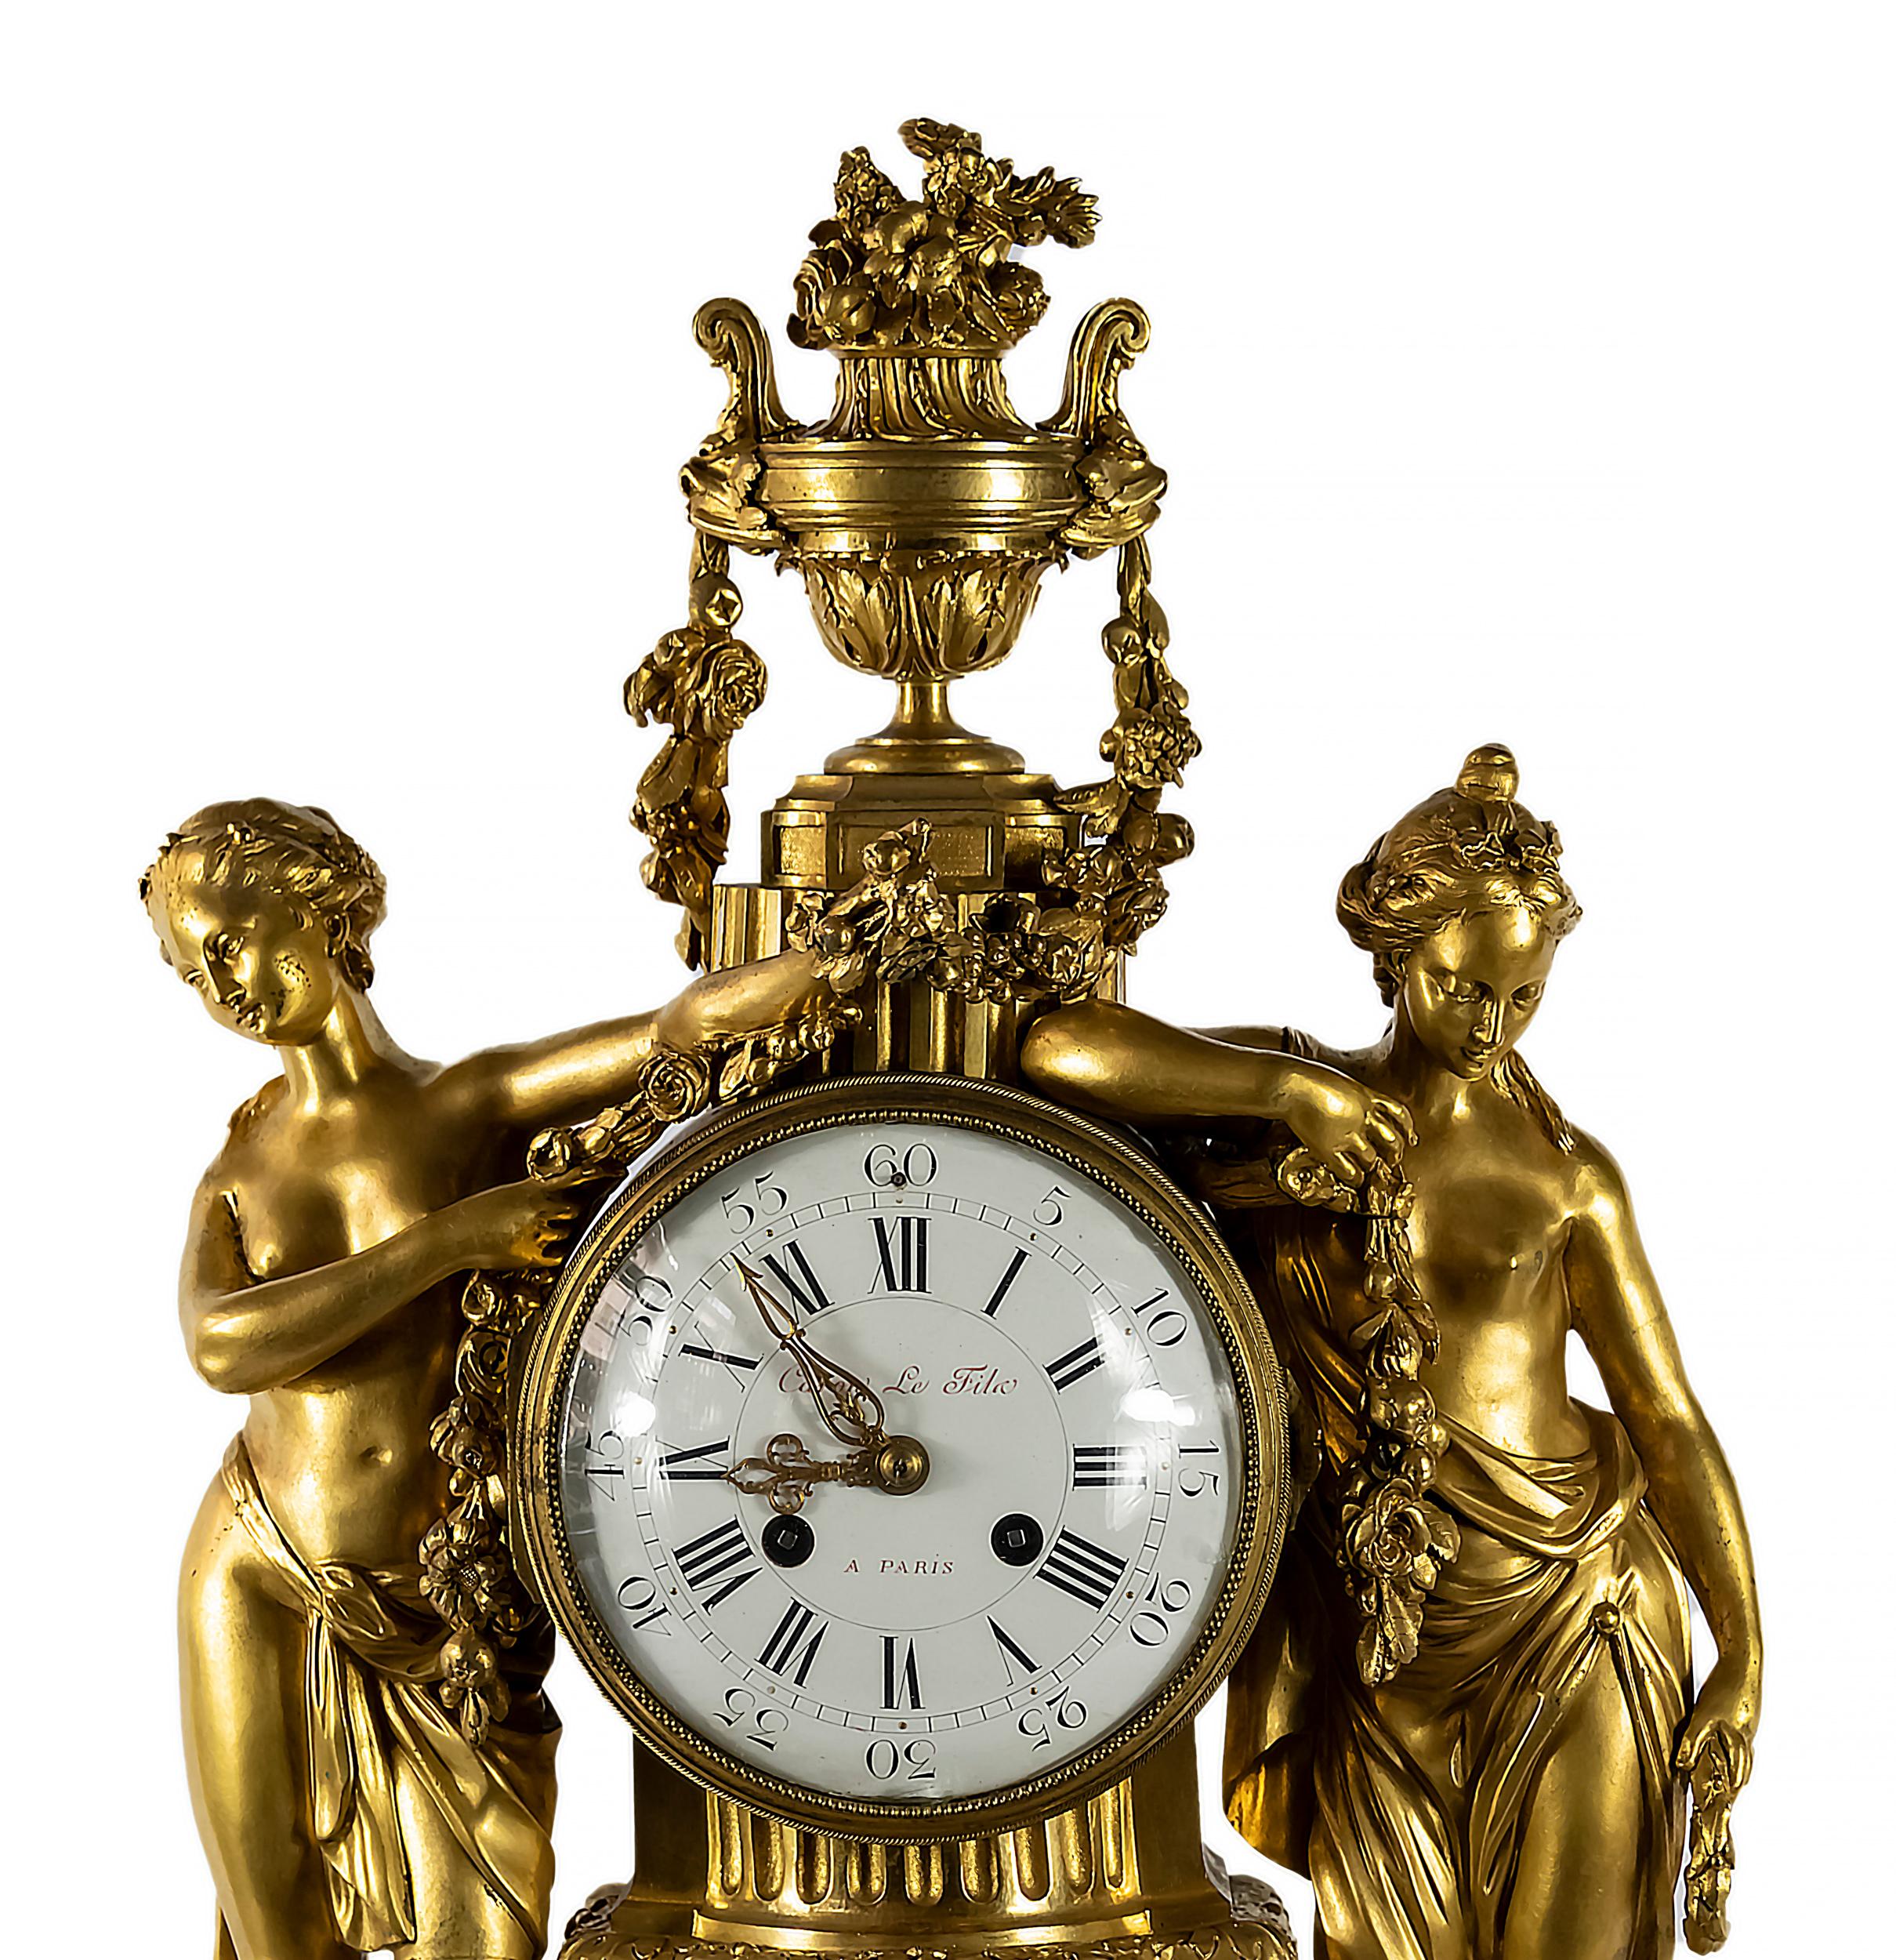 Antike französische Kaminsimsuhr aus vergoldeter Bronze und weißem Marmor aus dem 19. Jahrhundert. 
Die Uhr ist mit schönen Frauenfiguren verziert, die Blumengirlanden und eine Vase mit Blumen auf der Spitze halten. 
Das Zifferblatt ist weiß